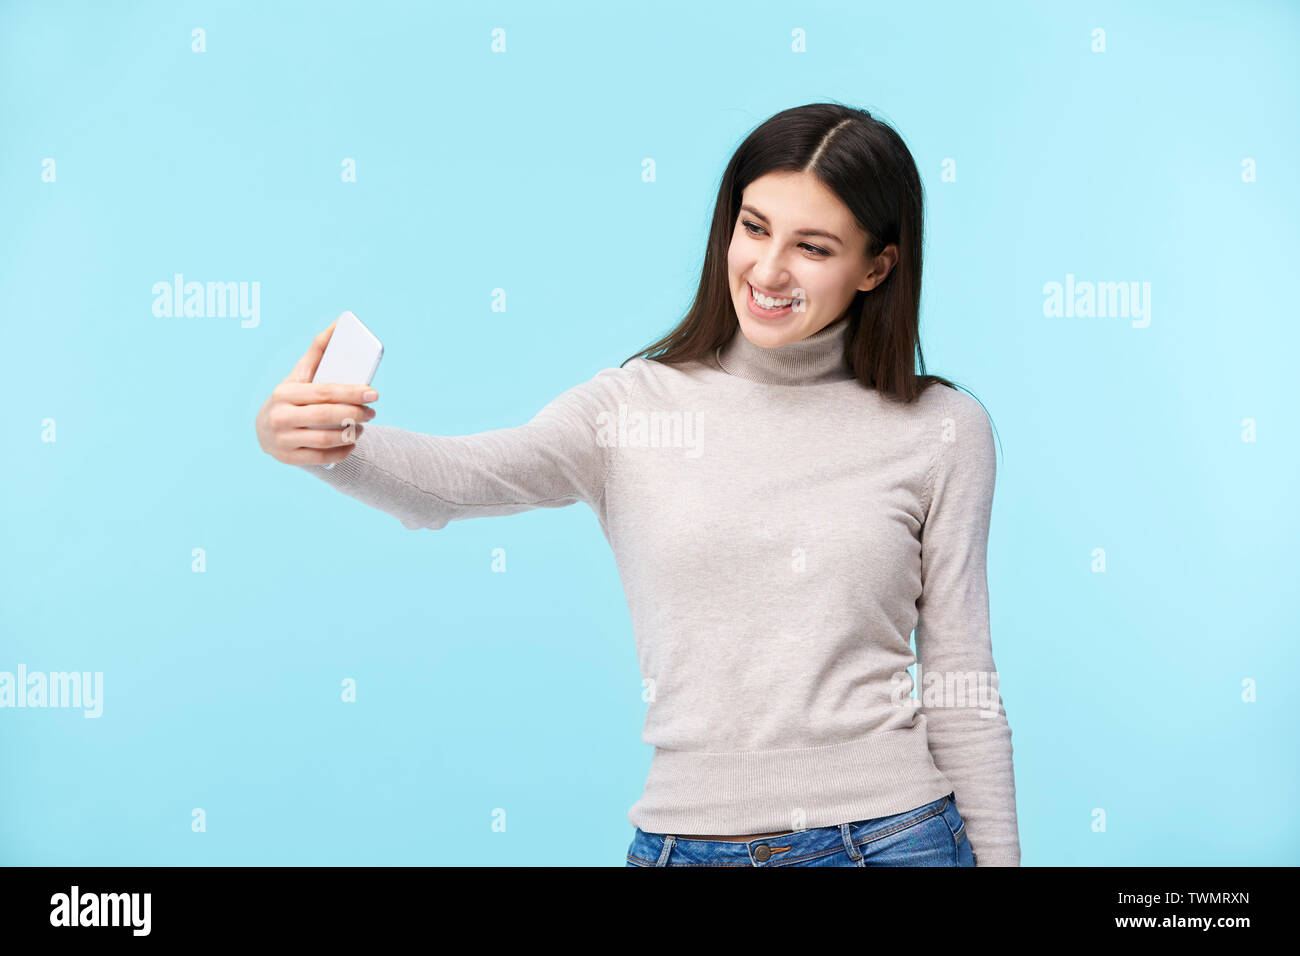 Schönen jungen kaukasischen Frau eine selfie, glücklich und lächelnd, auf blauem Hintergrund isoliert Stockfoto